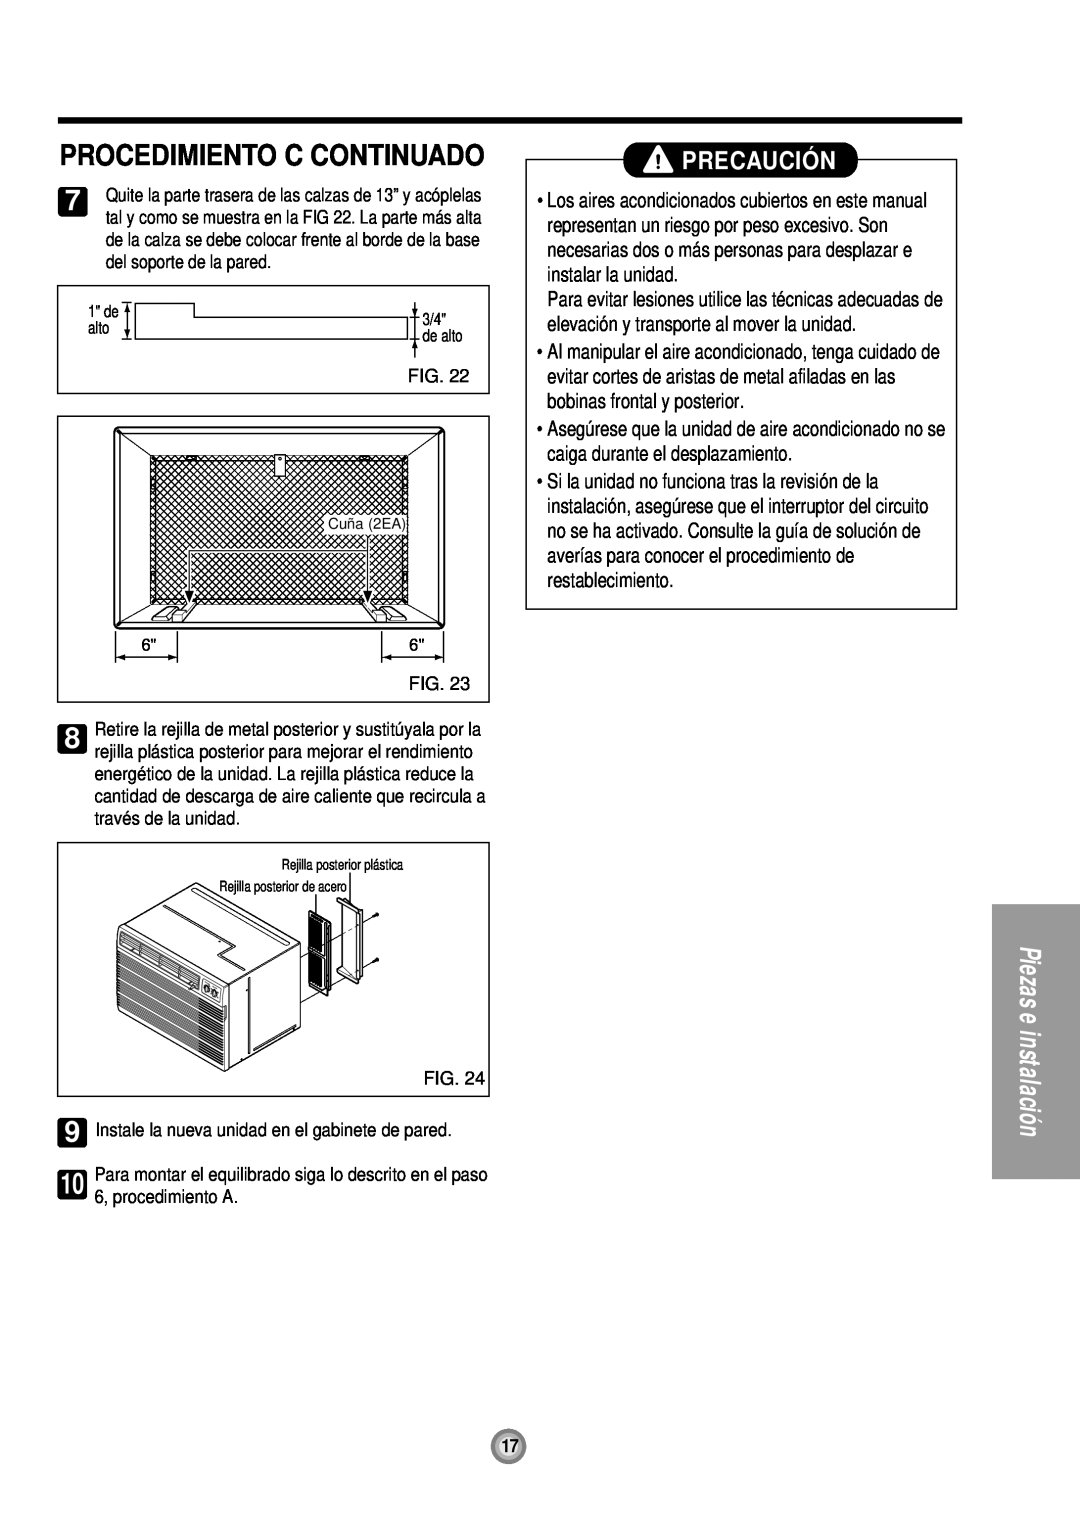 Friedrich UE12, UE10, UE08 manual Procedimiento C Continuado, Precaució N, Cuña 2EA 